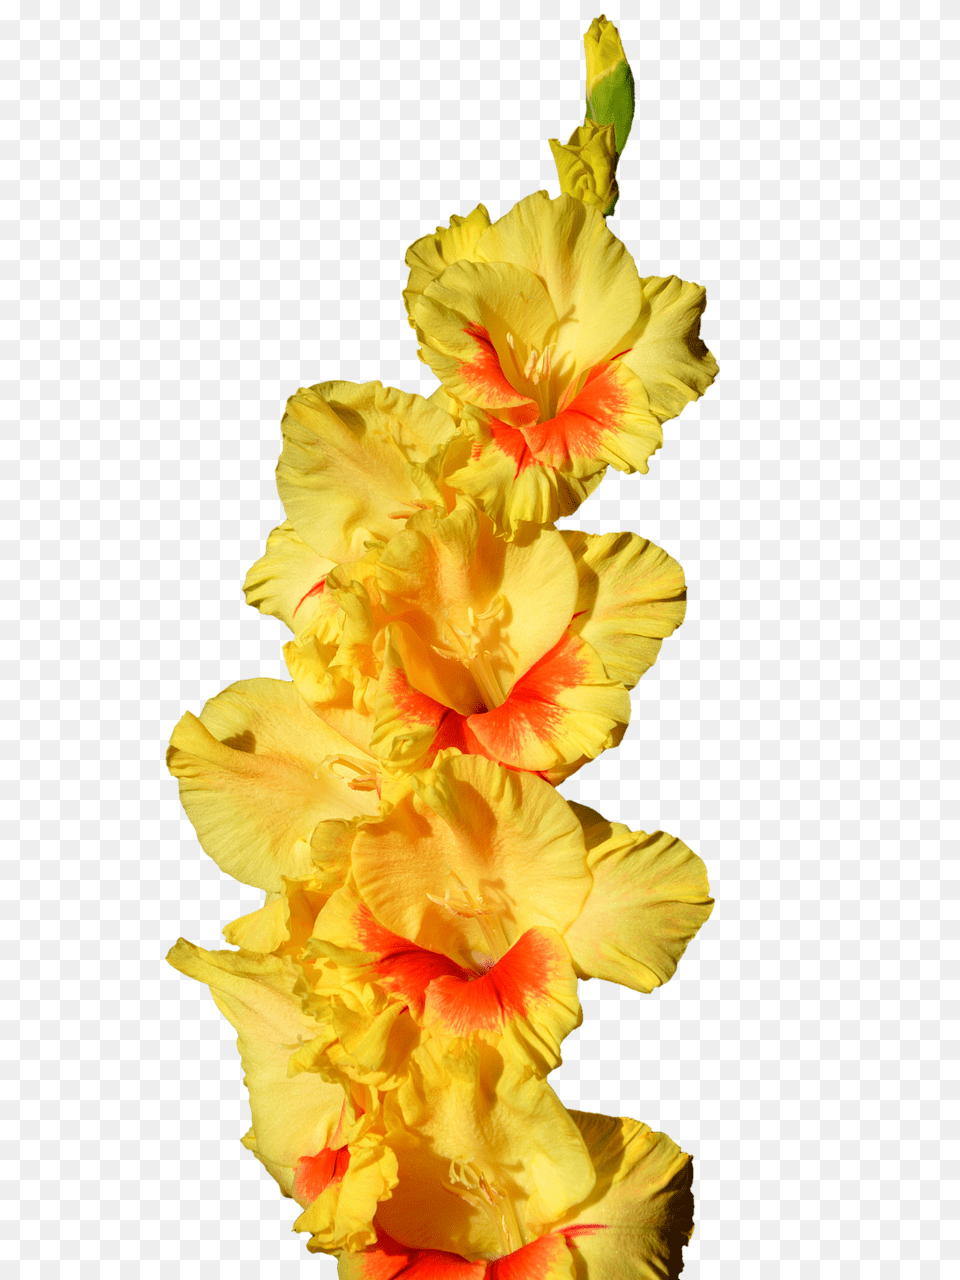 Gladiolus Flower, Petal, Plant, Rose Free Png Download